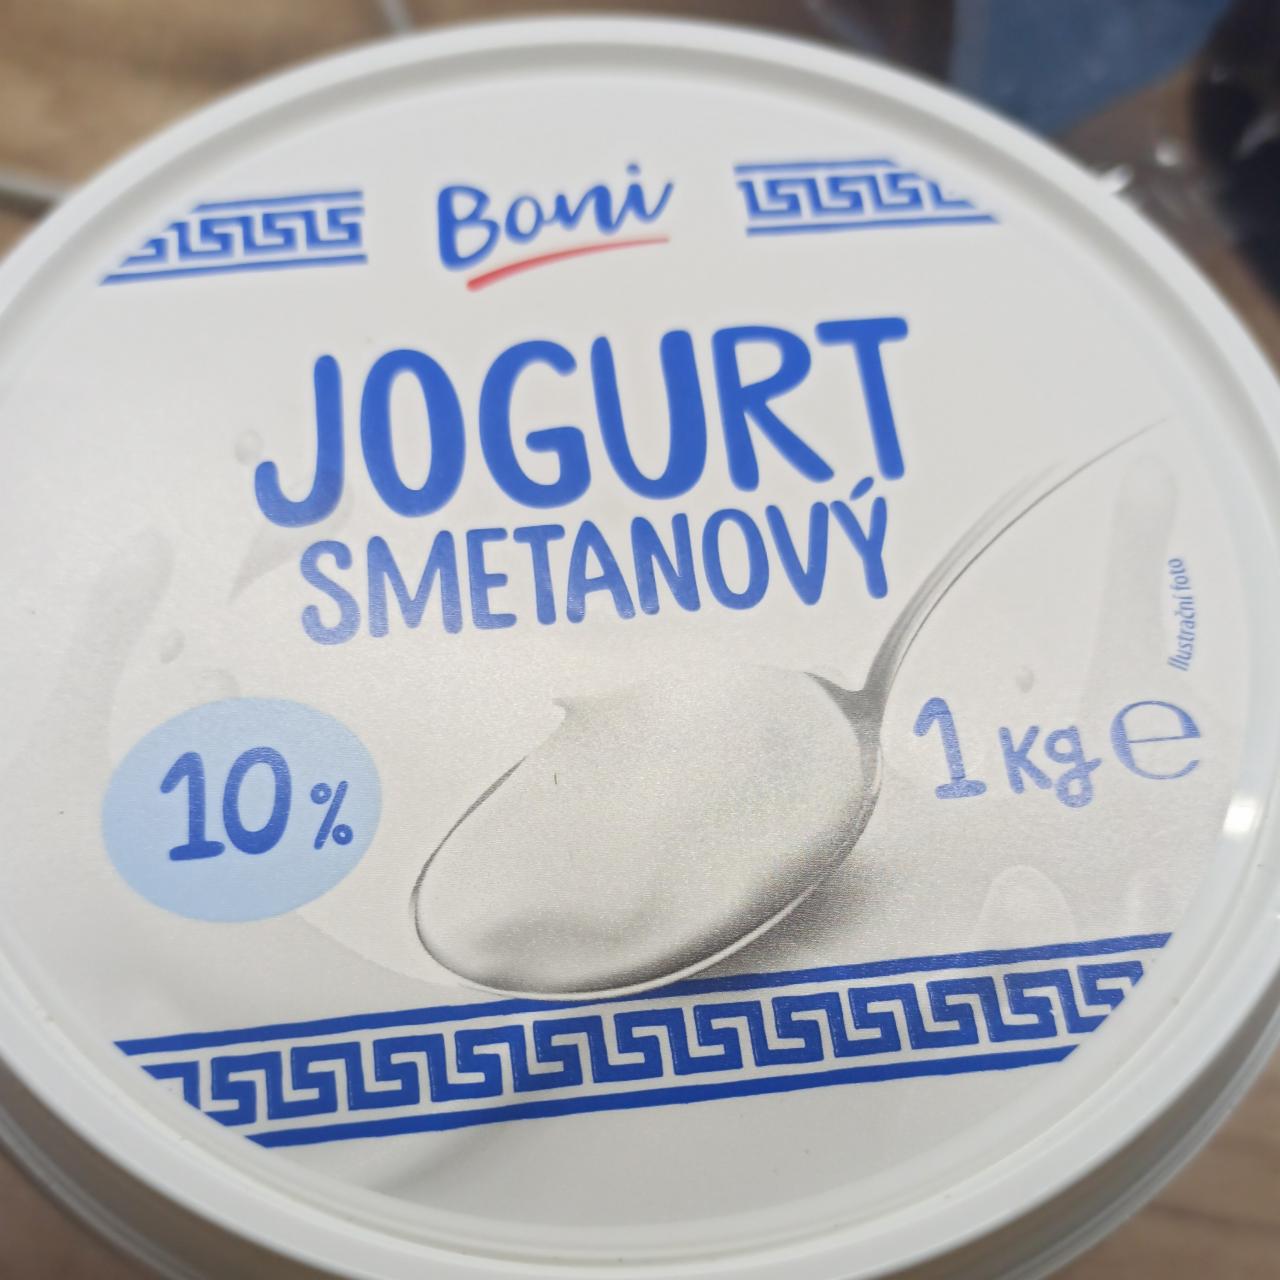 Fotografie - Jogurt smetanový 10% Boni